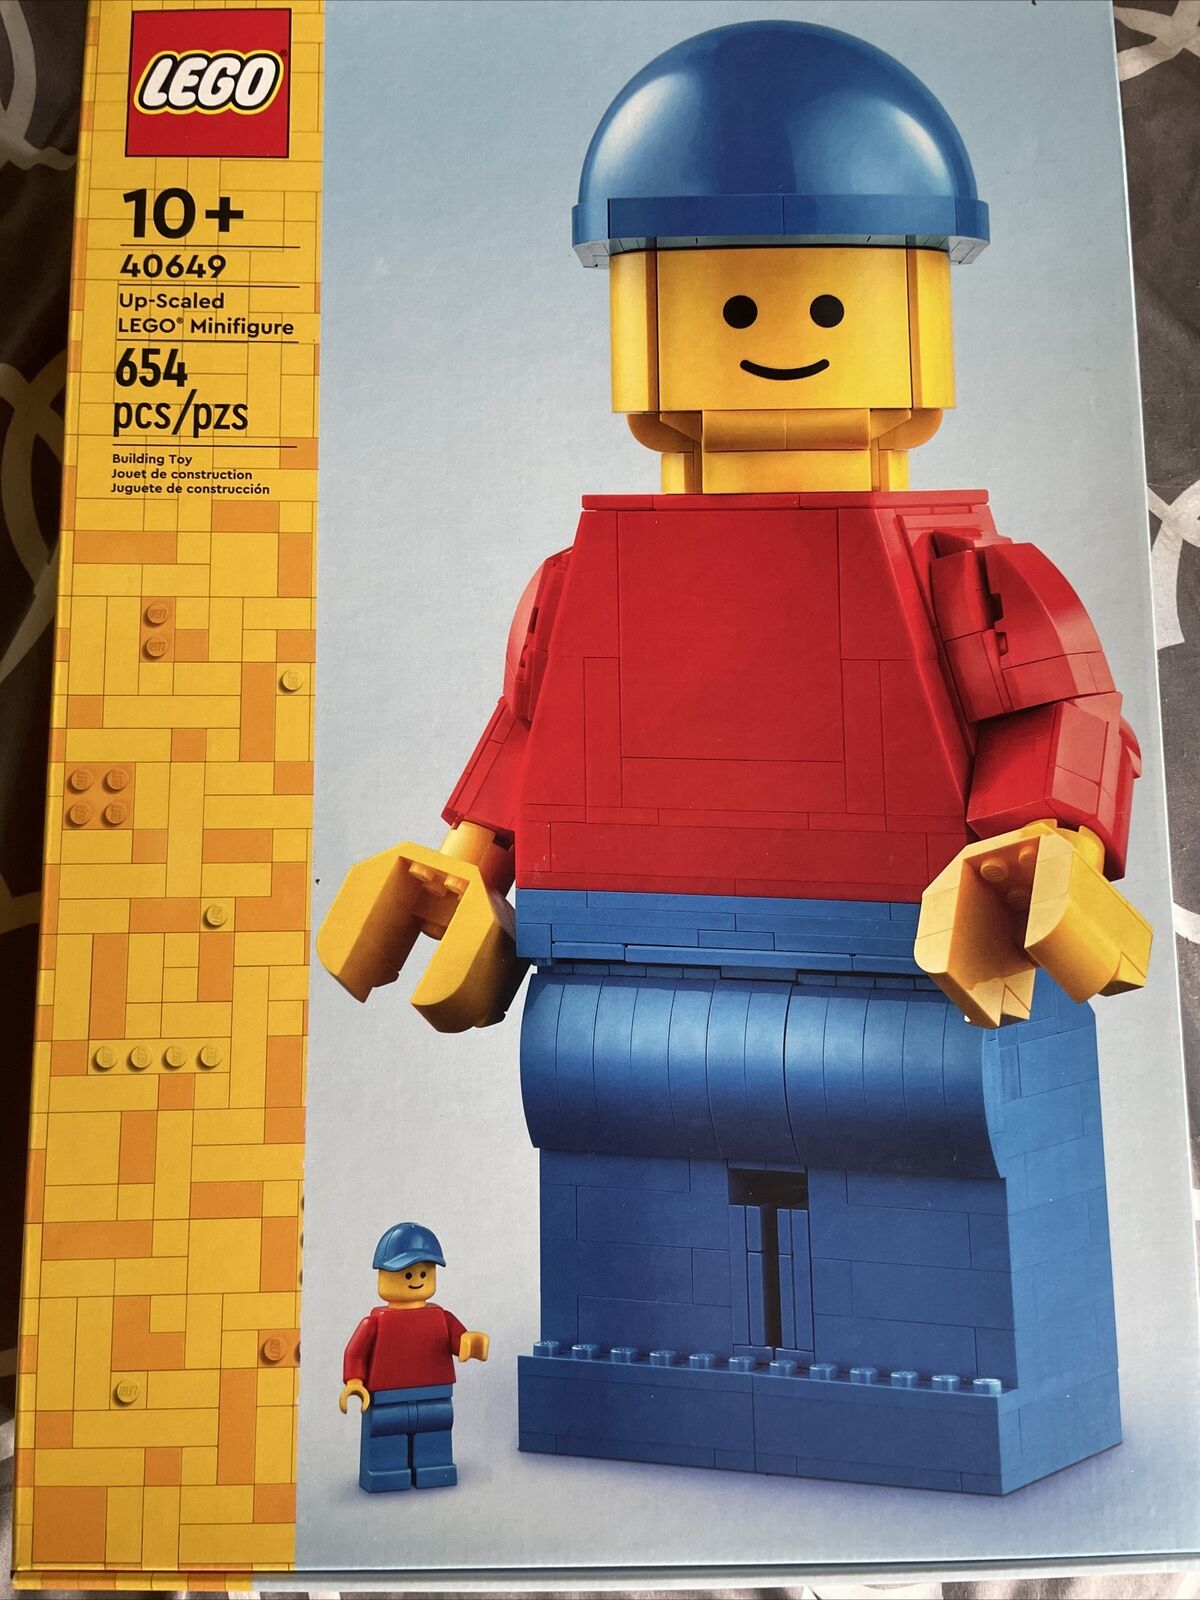 LEGO CREATOR: Up-Scaled LEGO Minifigure (40649)